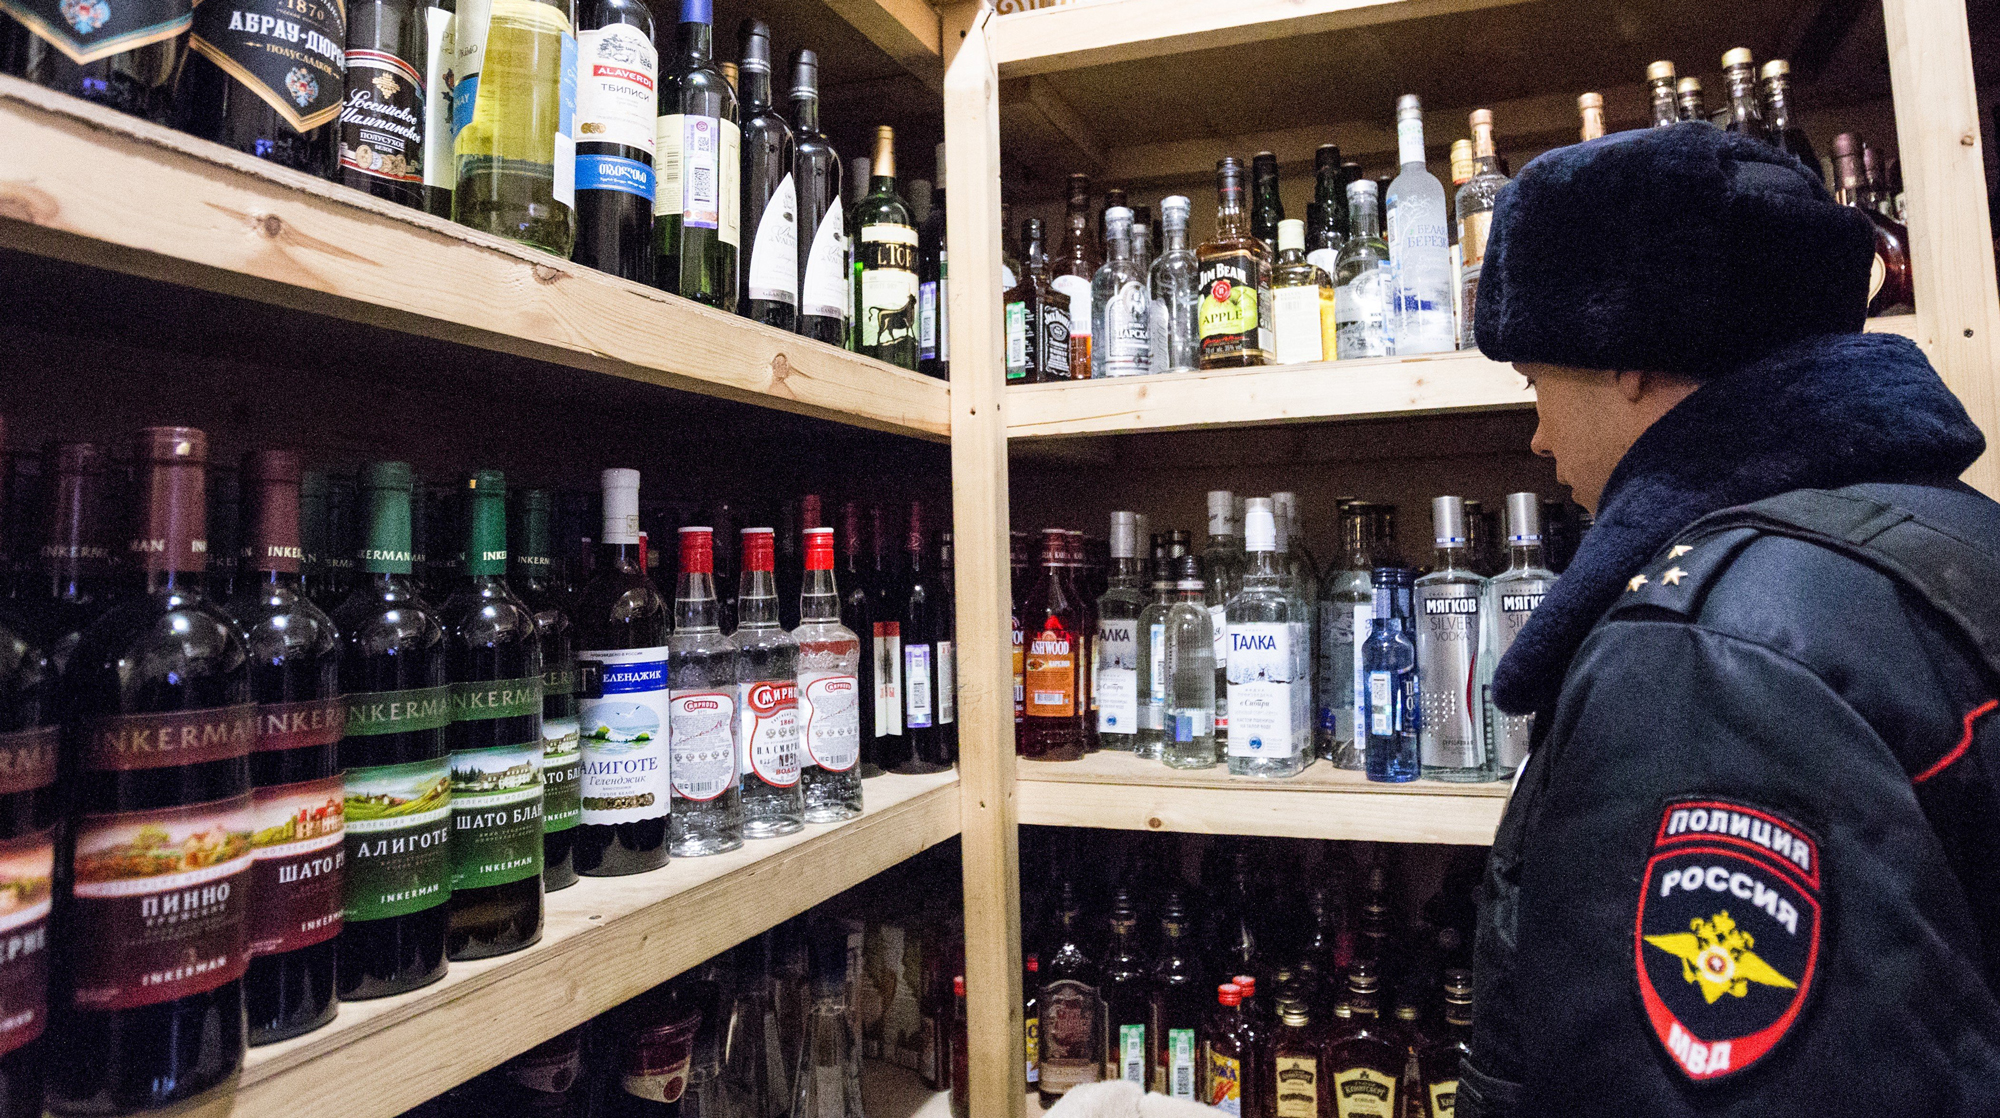 В России предлагают запретить продавать алкоголь клиентам в форменной одежде Фото: © Агентство Москва/Зыков Кирилл